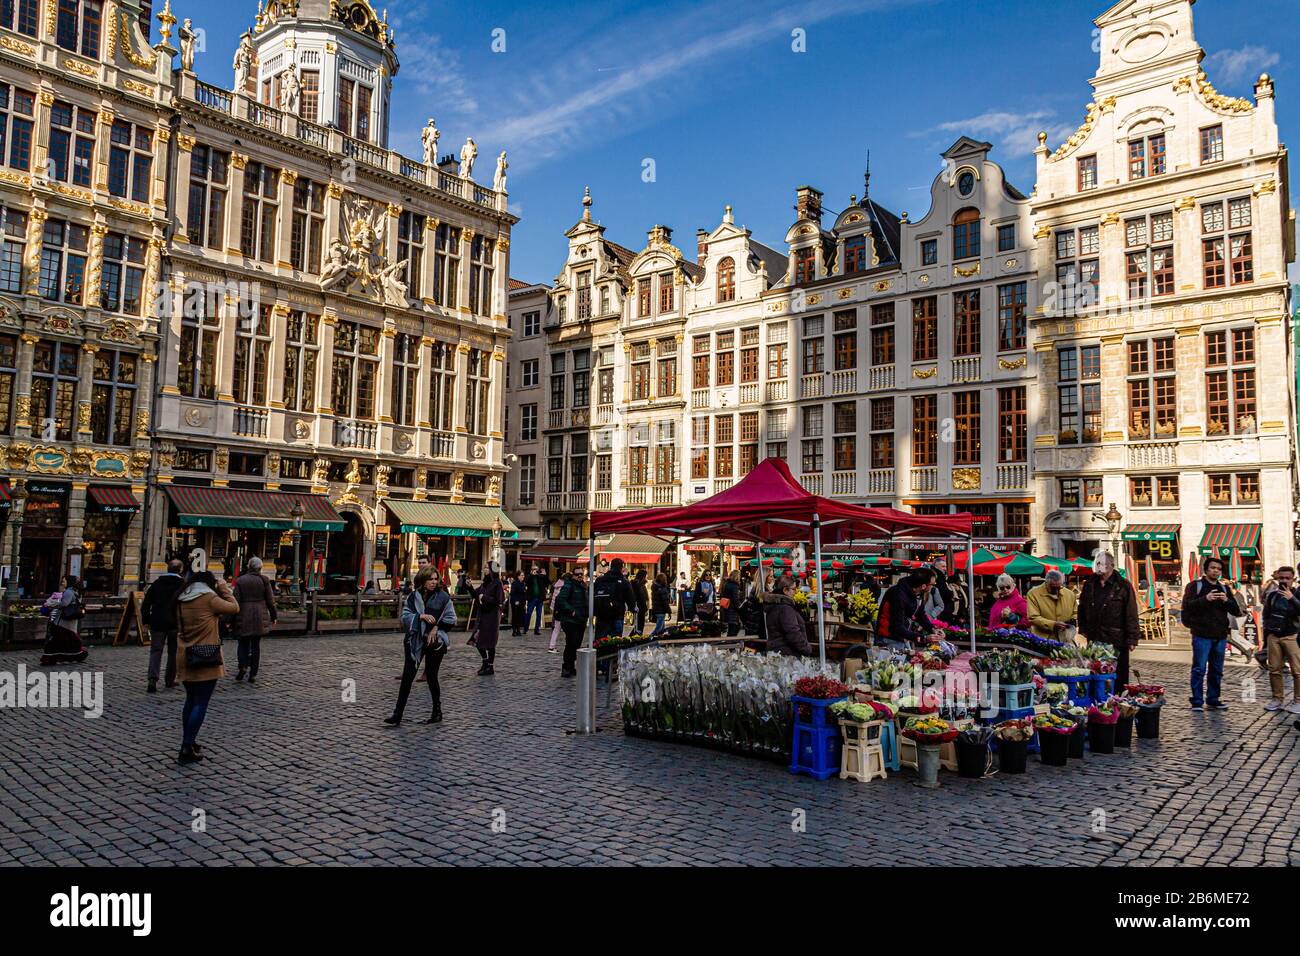 Un étalage de fleurs sur la Grand place, la principale place piétonne du centre-ville de Bruxelles, capitale de la Belgique. Mars 2019. Banque D'Images